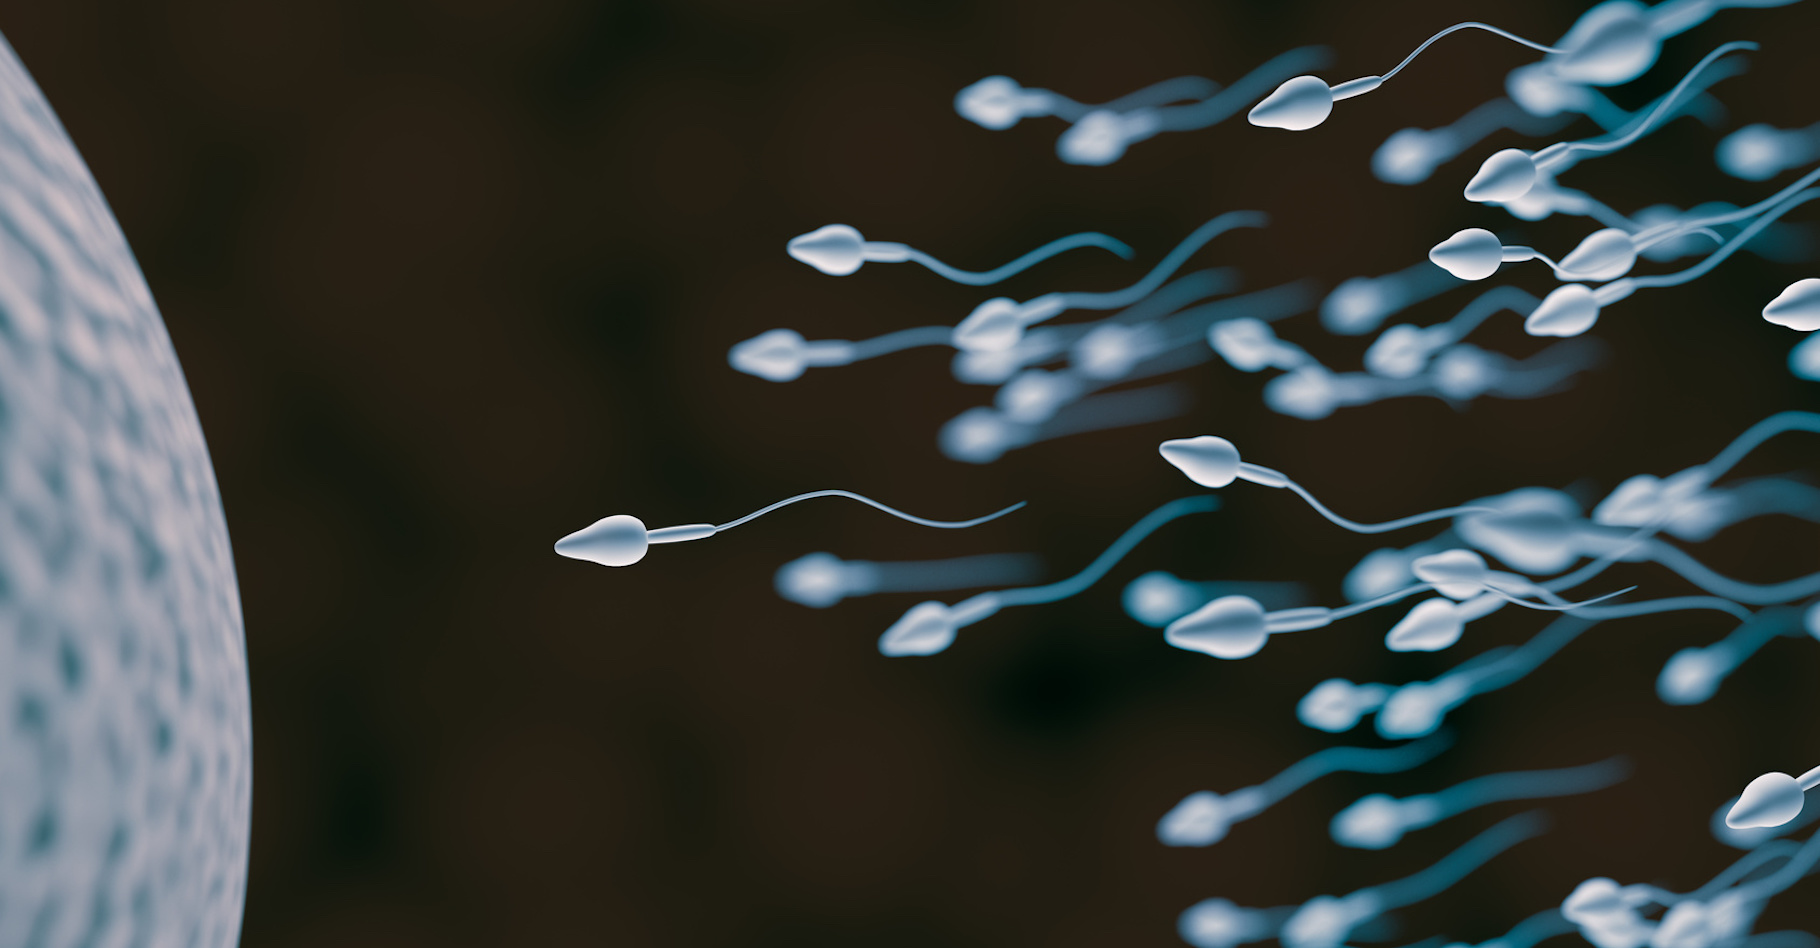 Des chercheurs britanniques ont observé sur les spermatozoïdes humains, des queues renforcées qui semblent être la clé de leur déplacement dans l’appareil génital féminin. © vchalup, Fotolia